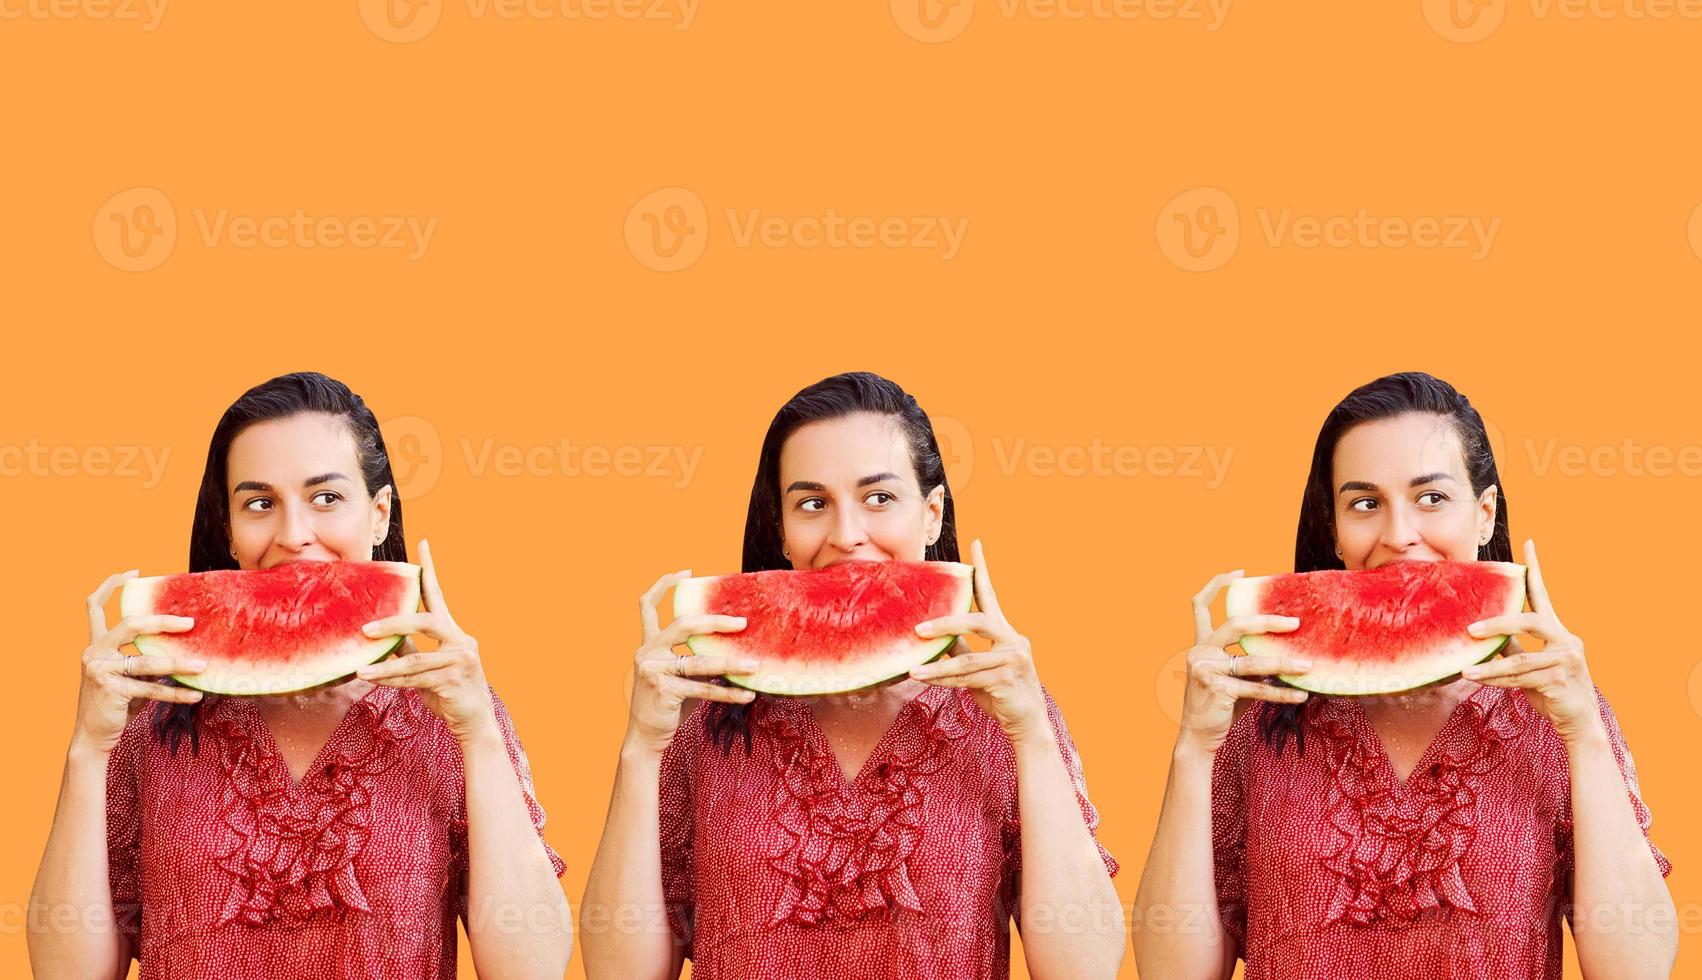 mönster av glad kvinna som håller en bit skivad vattenmelon på en färgstark bakgrund. sommar koncept foto